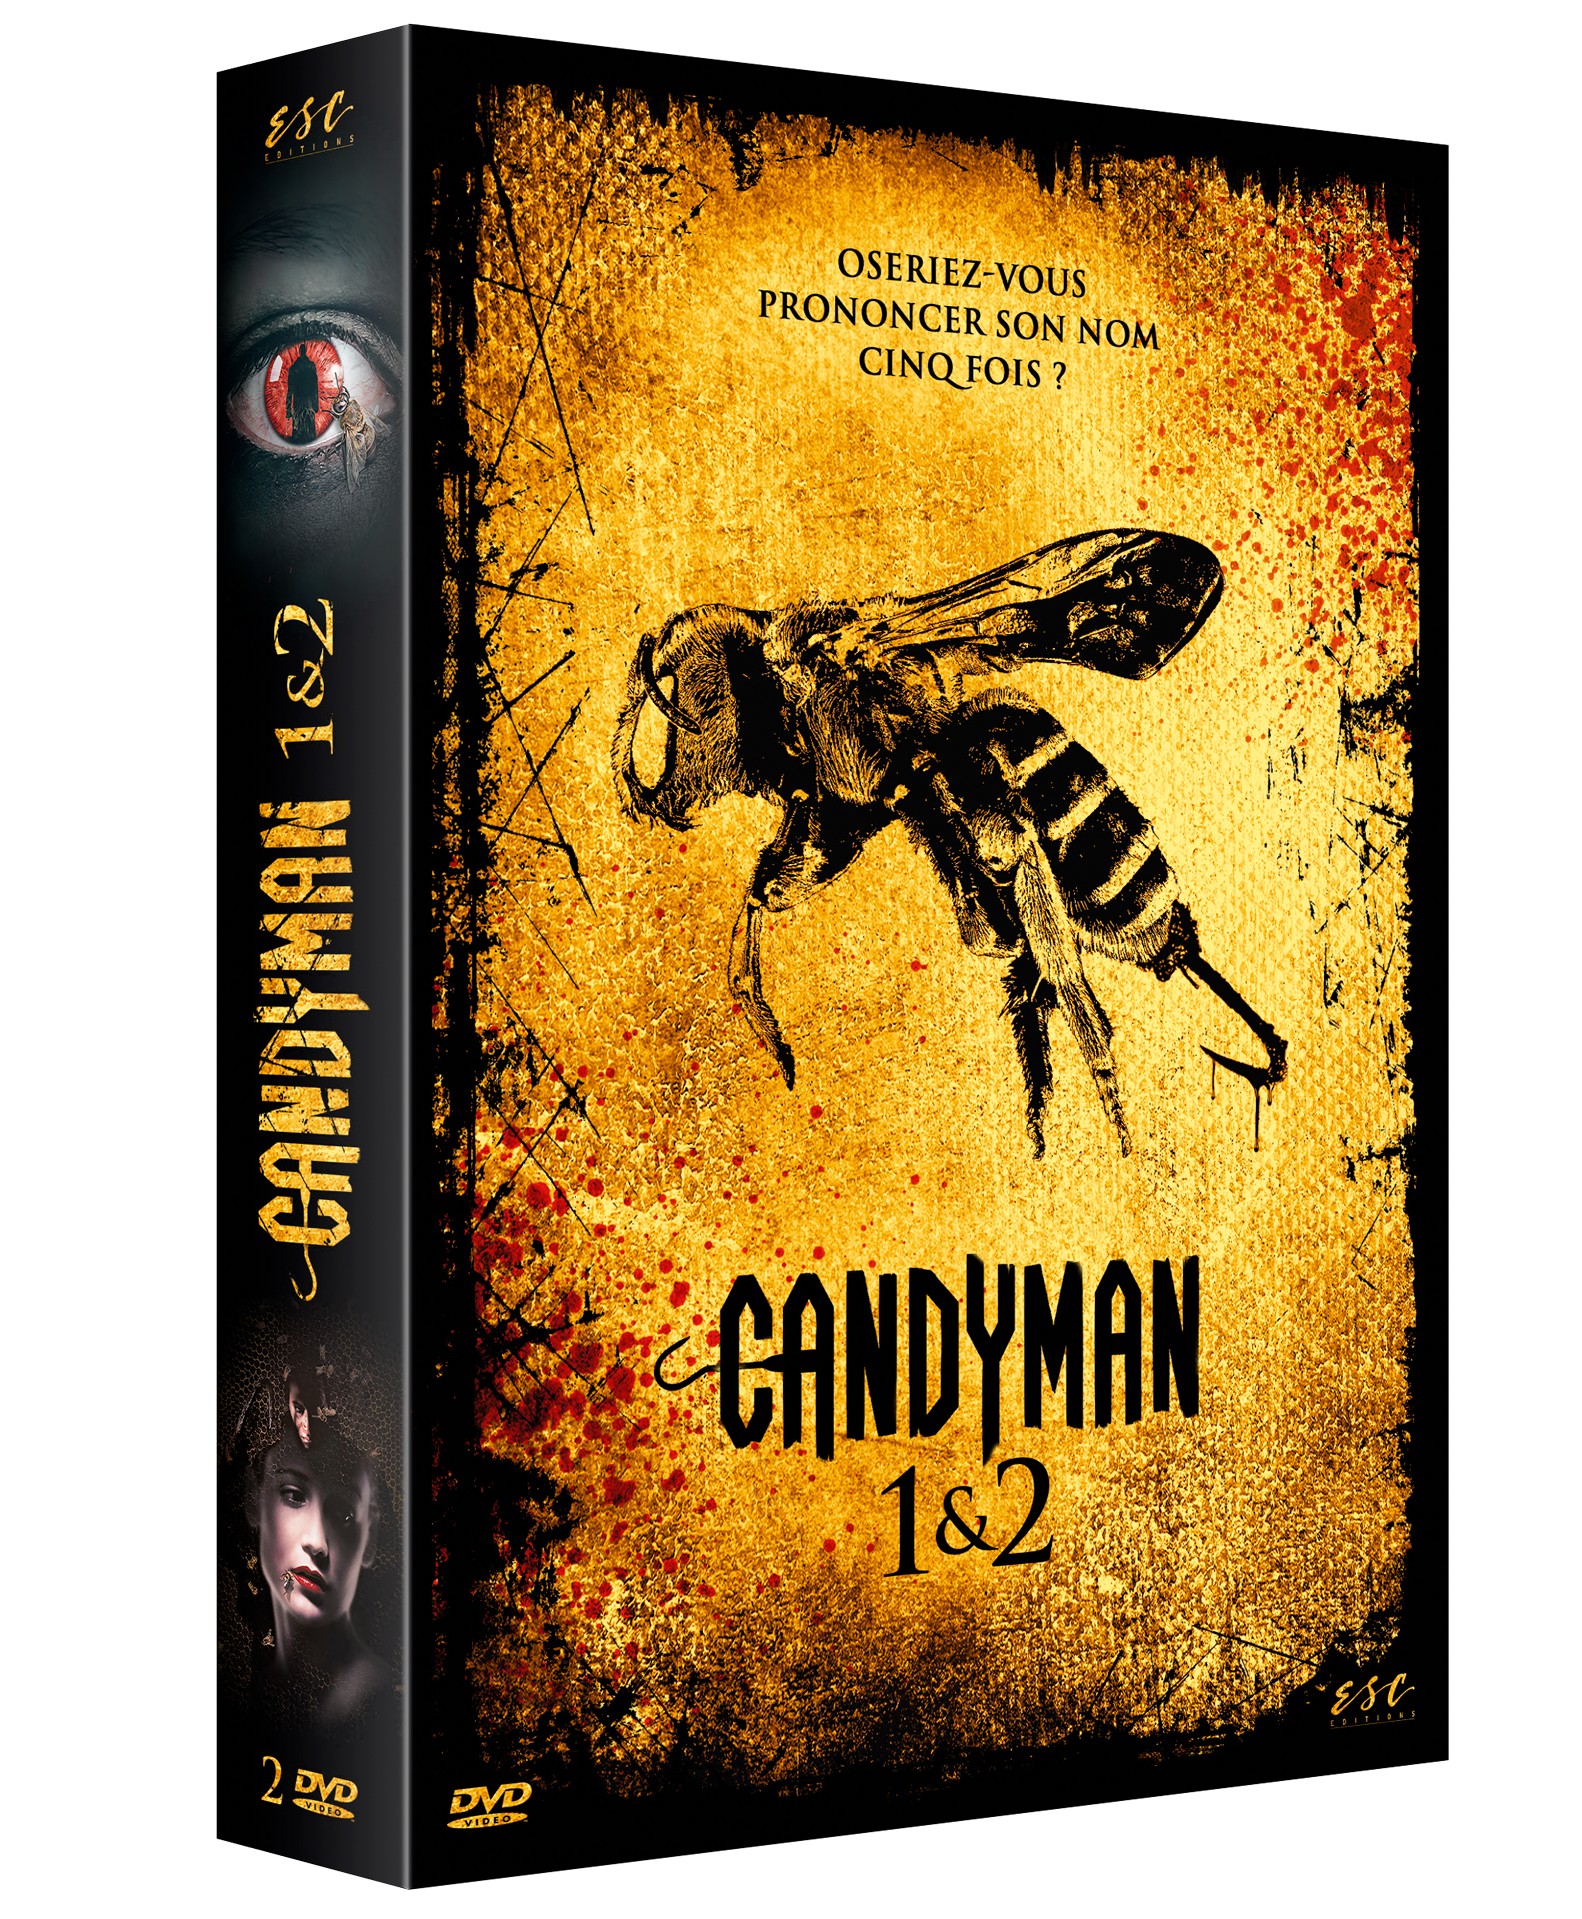 CANDYMAN 1 & 2 COFFRET DVD